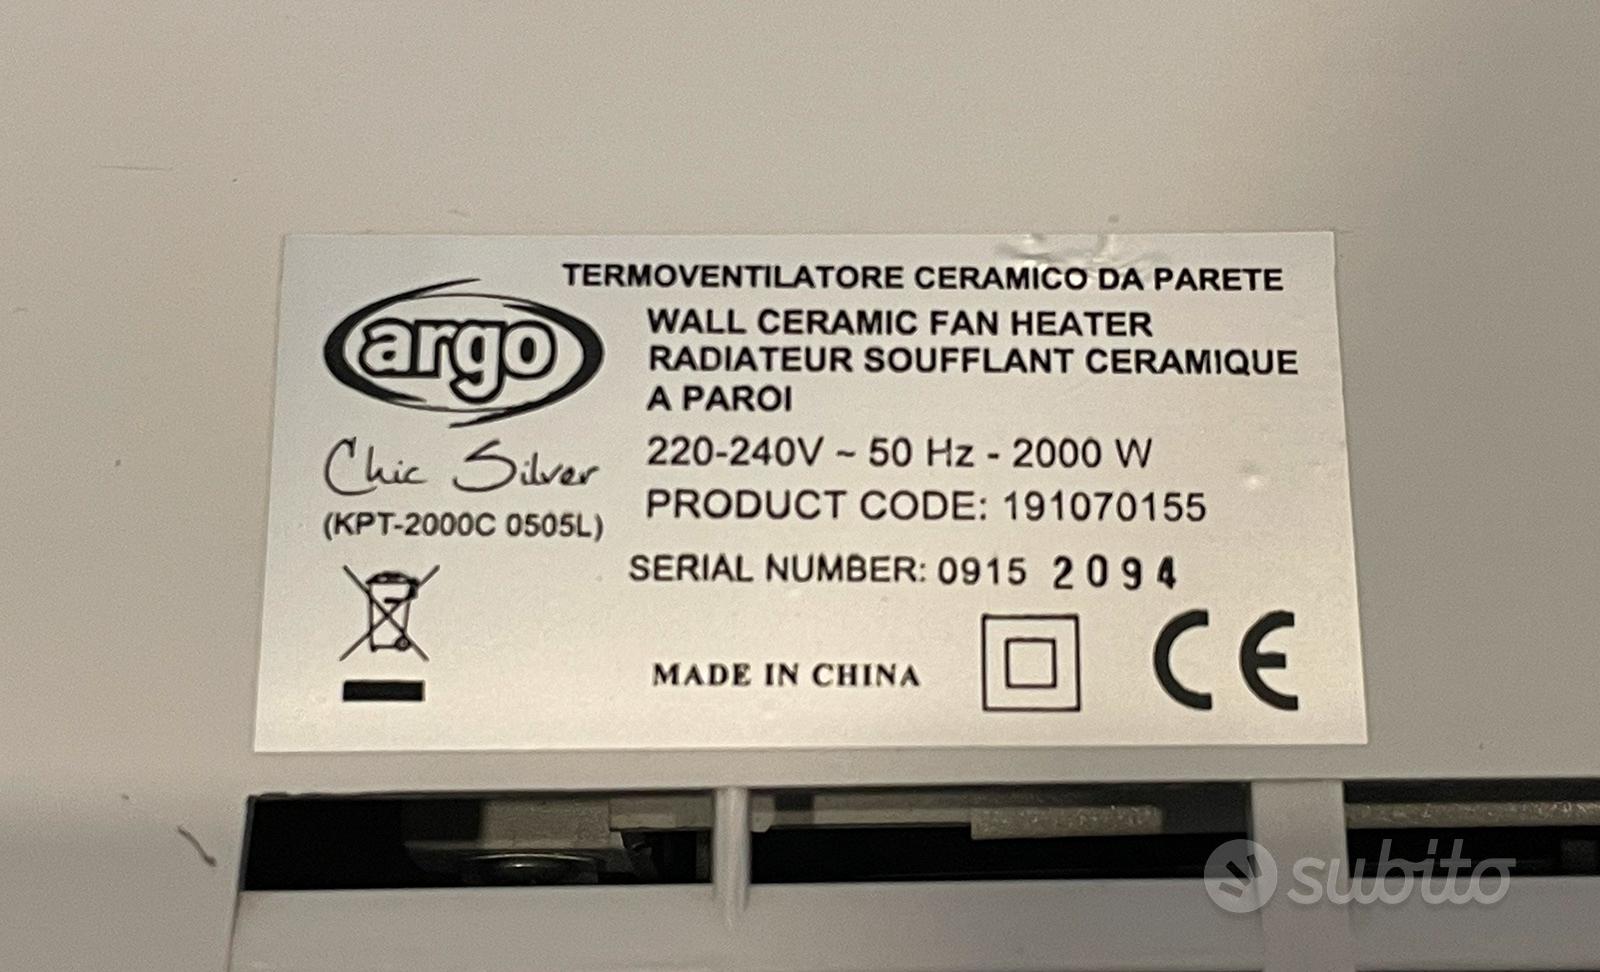 Argo Chic Silver - termoventilatore ceramico - Elettrodomestici In vendita  a La Spezia